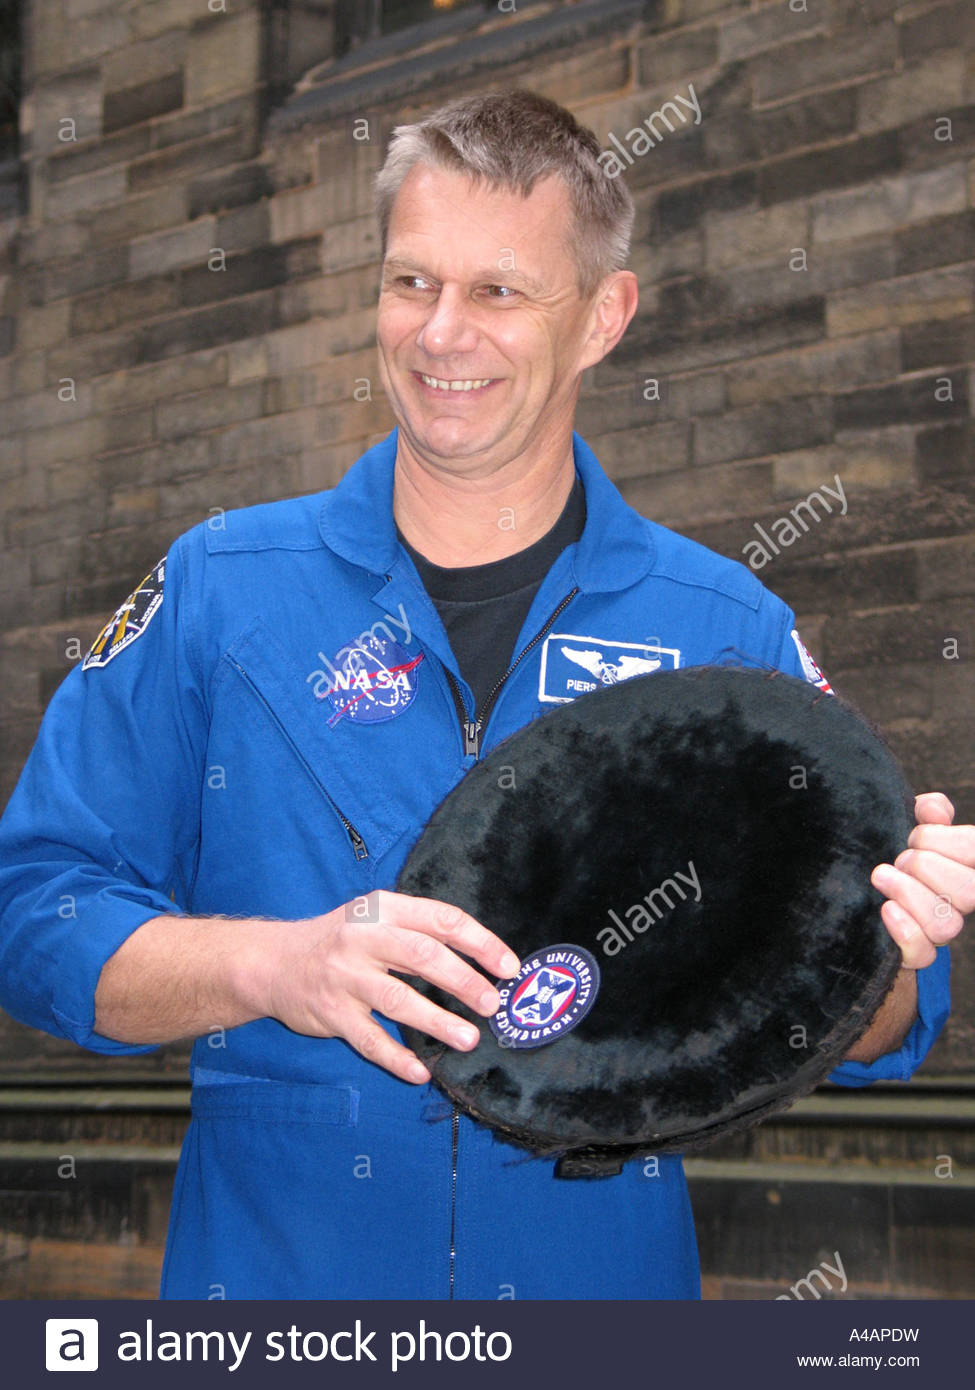 Astronaut Cap Stock Photos & Astronaut Cap Stock Images.